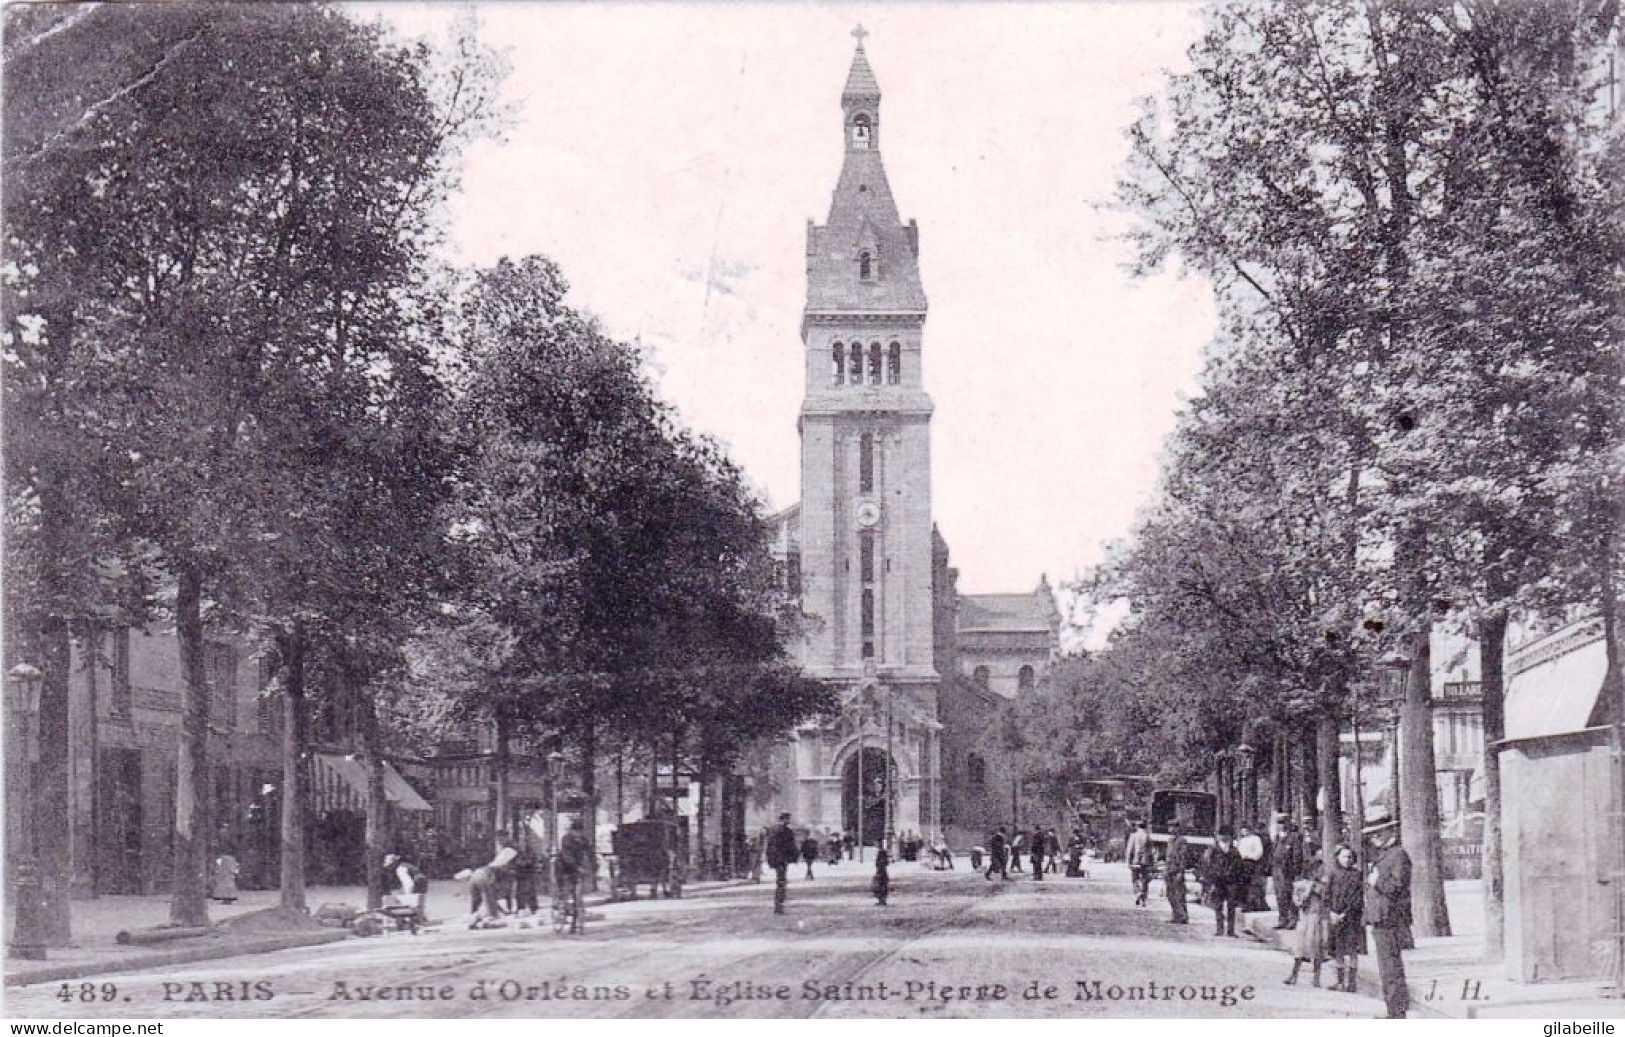 75 - PARIS 14 - Avenue D Orleans Et Eglise Saint Pierre De Montrouge - Paris (14)